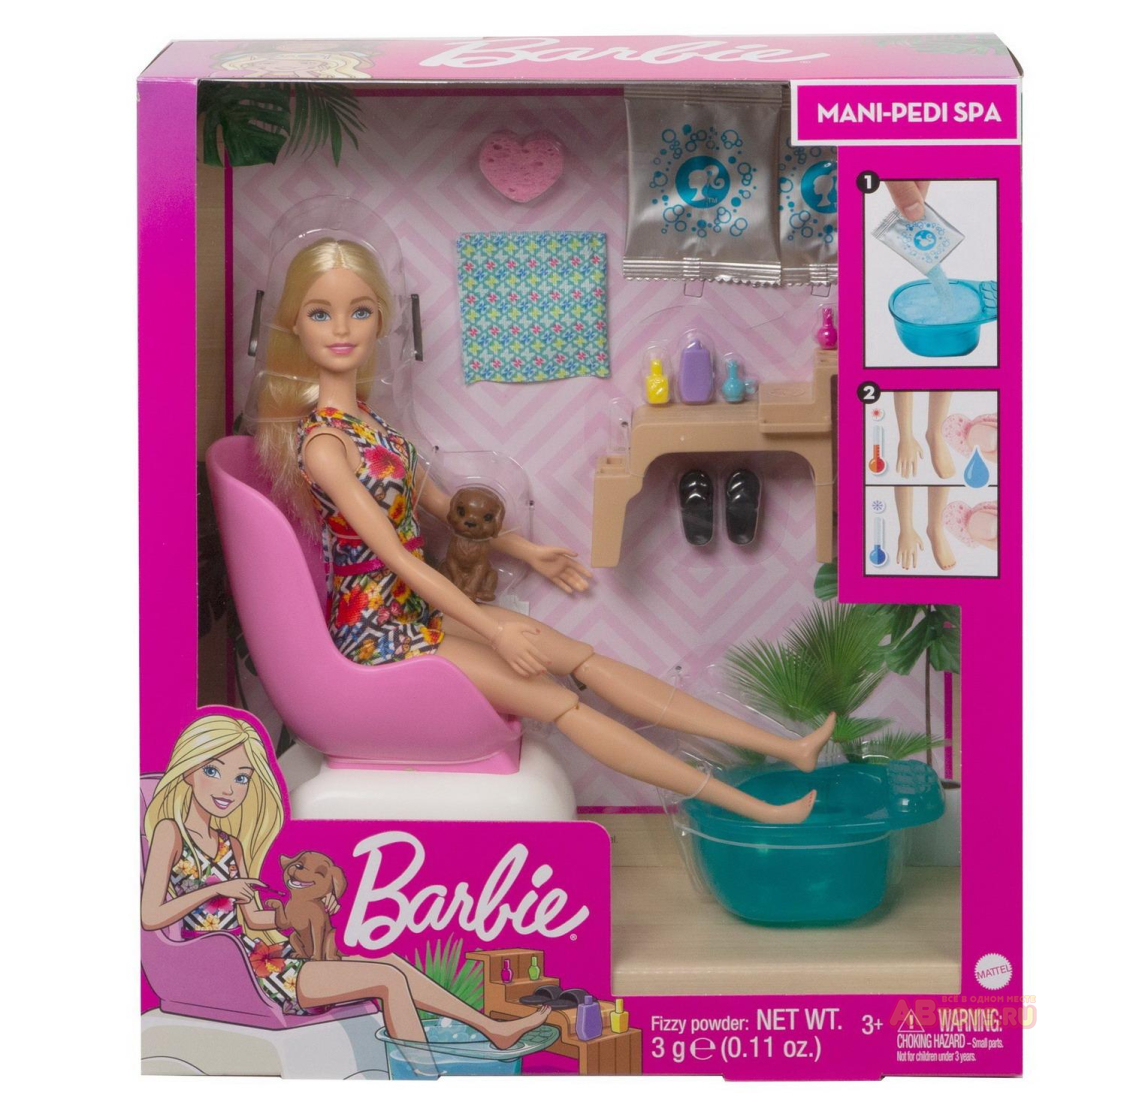 Игровой набор Mattel Barbie набор для маникюра/педикюра